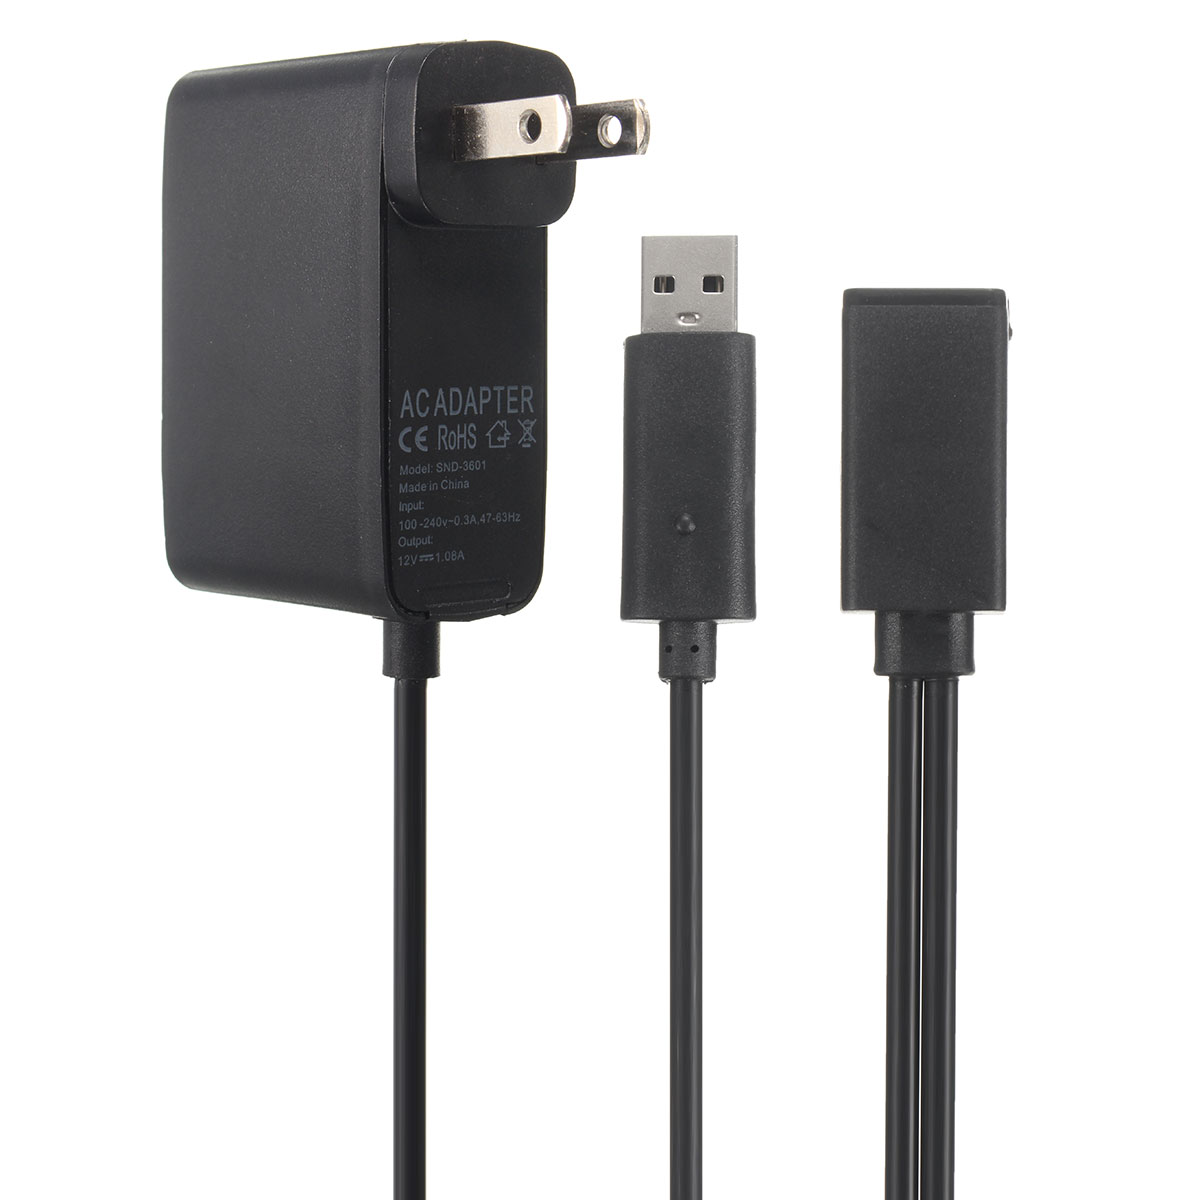 2.3m USB AC Adapter Power Supply Cable for Xbox 360 Kinect Sensor EU/US Plug 13